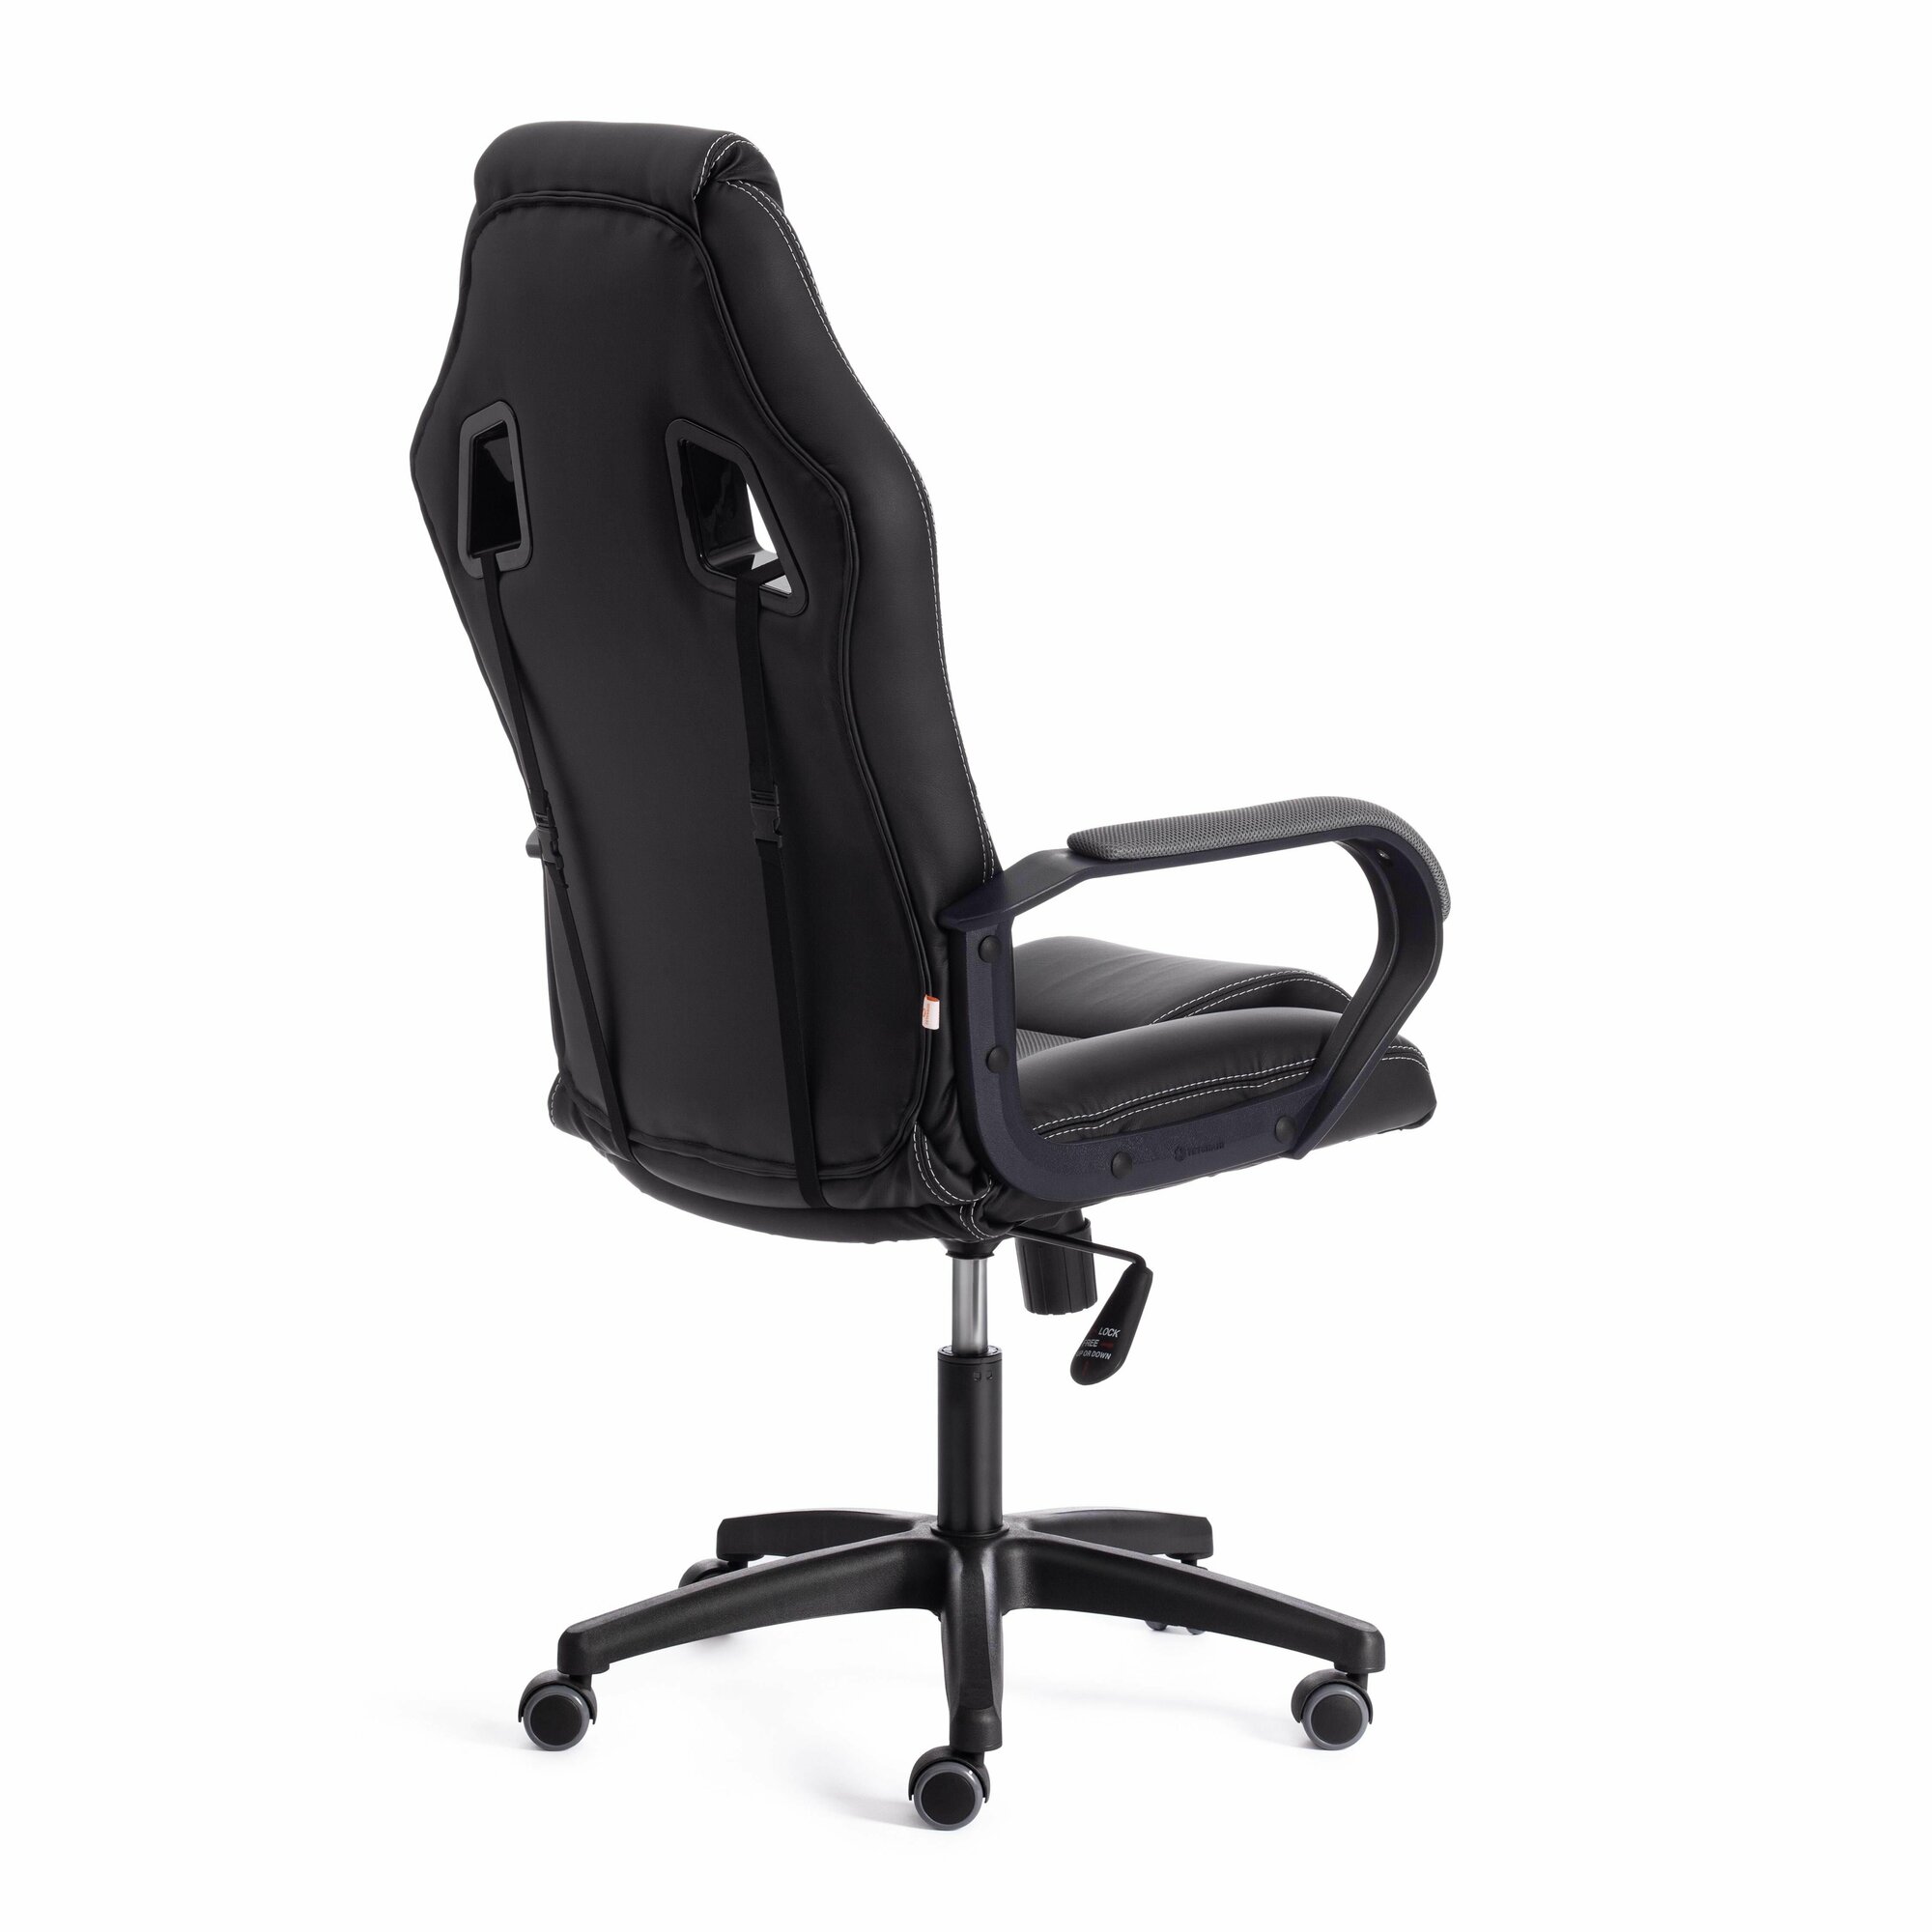 Компьютерное кресло TetChair Driver 22 игровое, обивка: искусственная кожа/текстиль, цвет: черный/серый, 36-6/TW-12 - фотография № 17